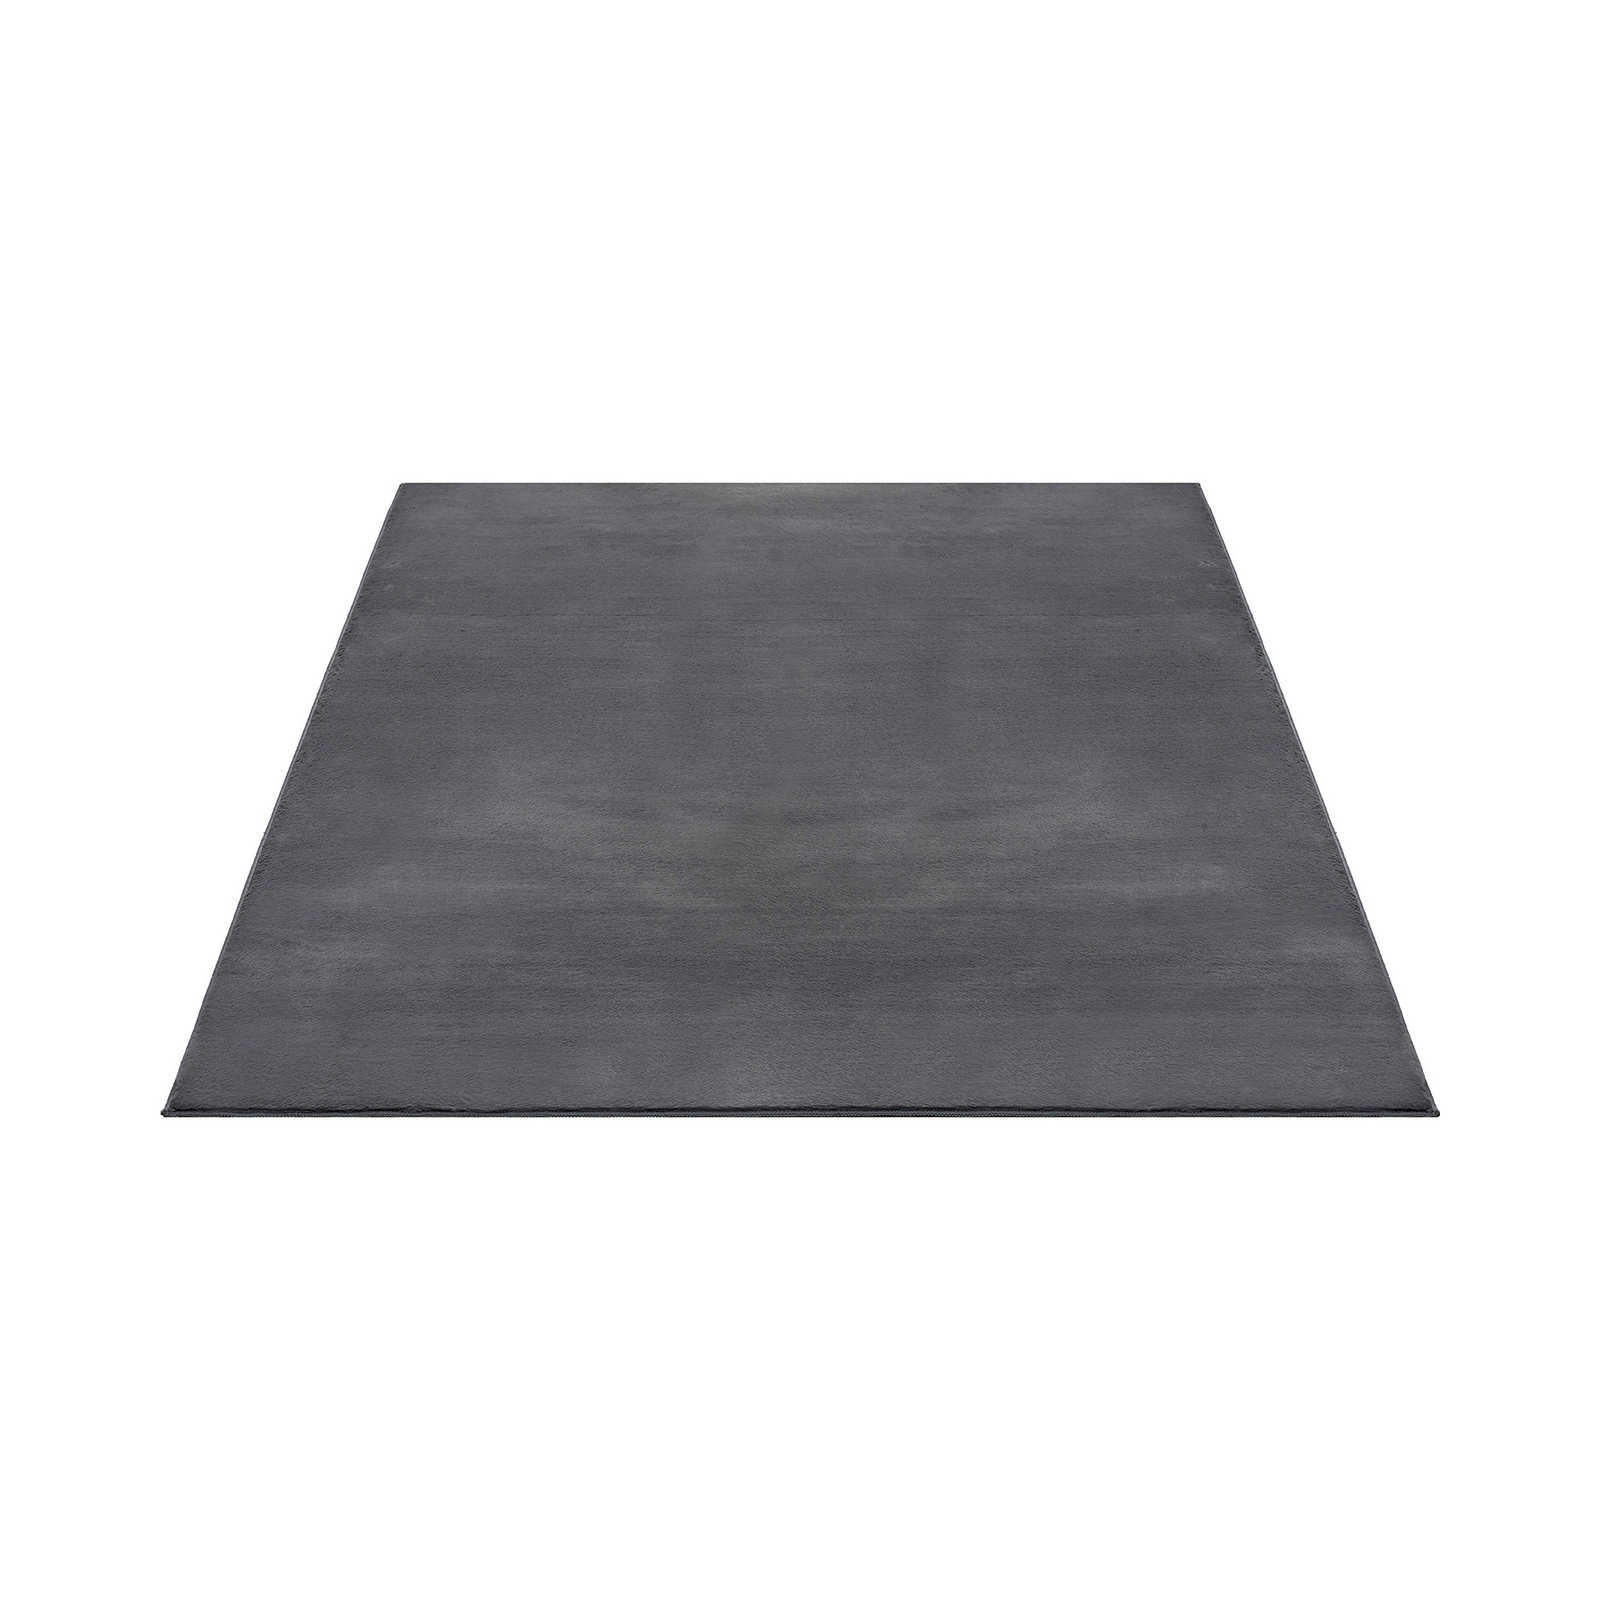 Zacht hoogpolig tapijt in antraciet - 280 x 200 cm
